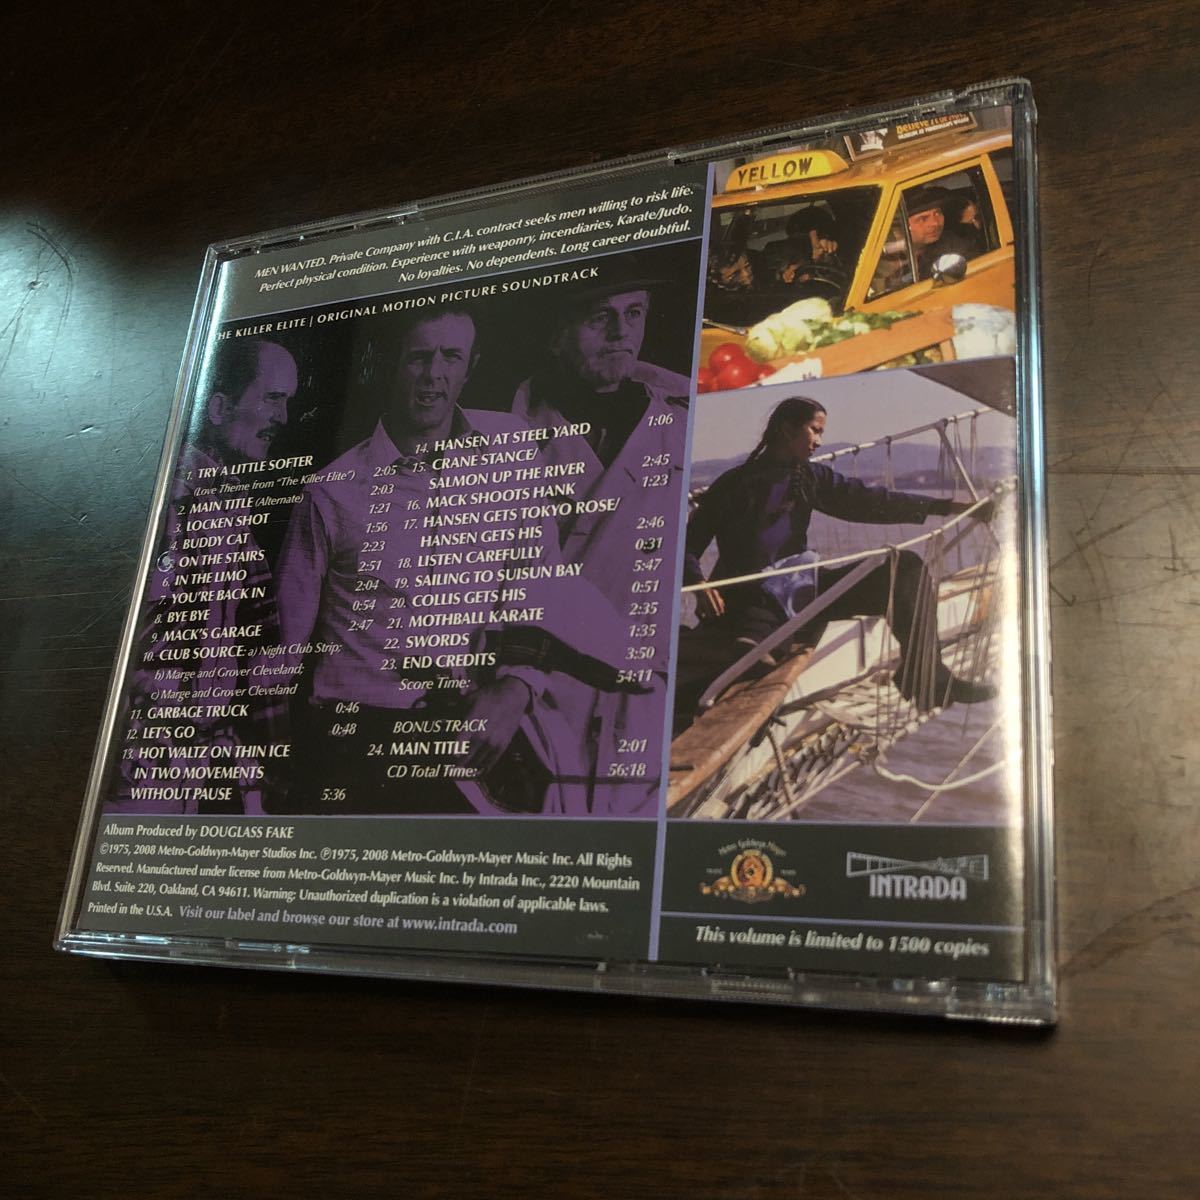 映画サントラ CD「キラー・エリート」中古美品 ジェリーフィールディング サムペキンパー ジェームズカーン 限定盤_画像3